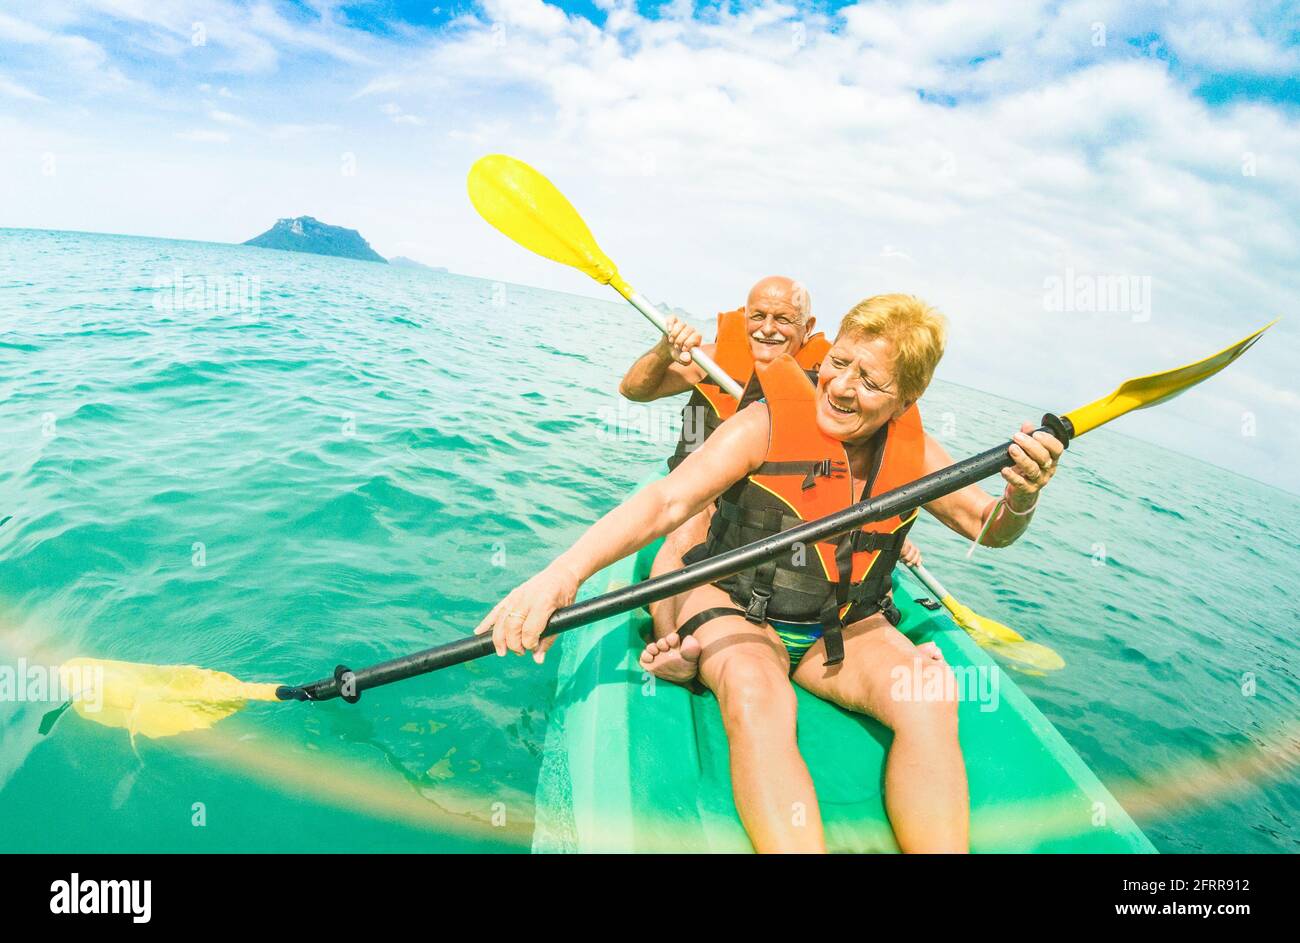 Ein glückliches Senior-Paar, das im Kajak in Ang ein Reise-Selfie macht Thong Marine Park in Ko Samui - Reise nach Thailand Wonders - aktiv ältere Konzept Stockfoto